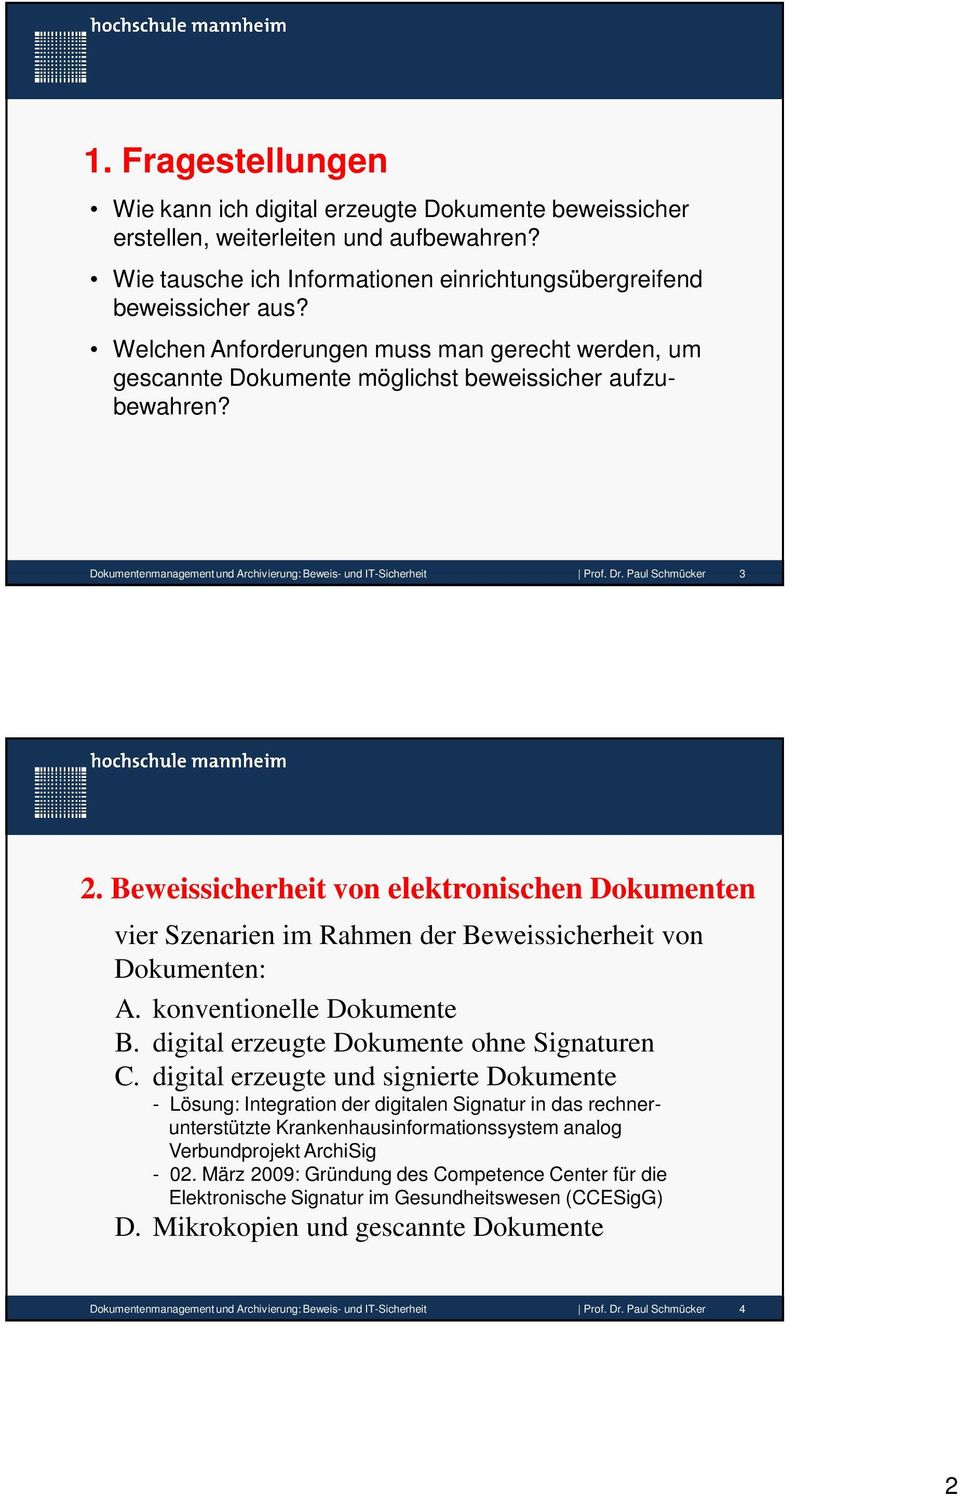 Paul Schmücker 3 2. Beweissicherheit von elektronischen Dokumenten vier Szenarien im Rahmen der Beweissicherheit von Dokumenten: A. konventionelle Dokumente B.